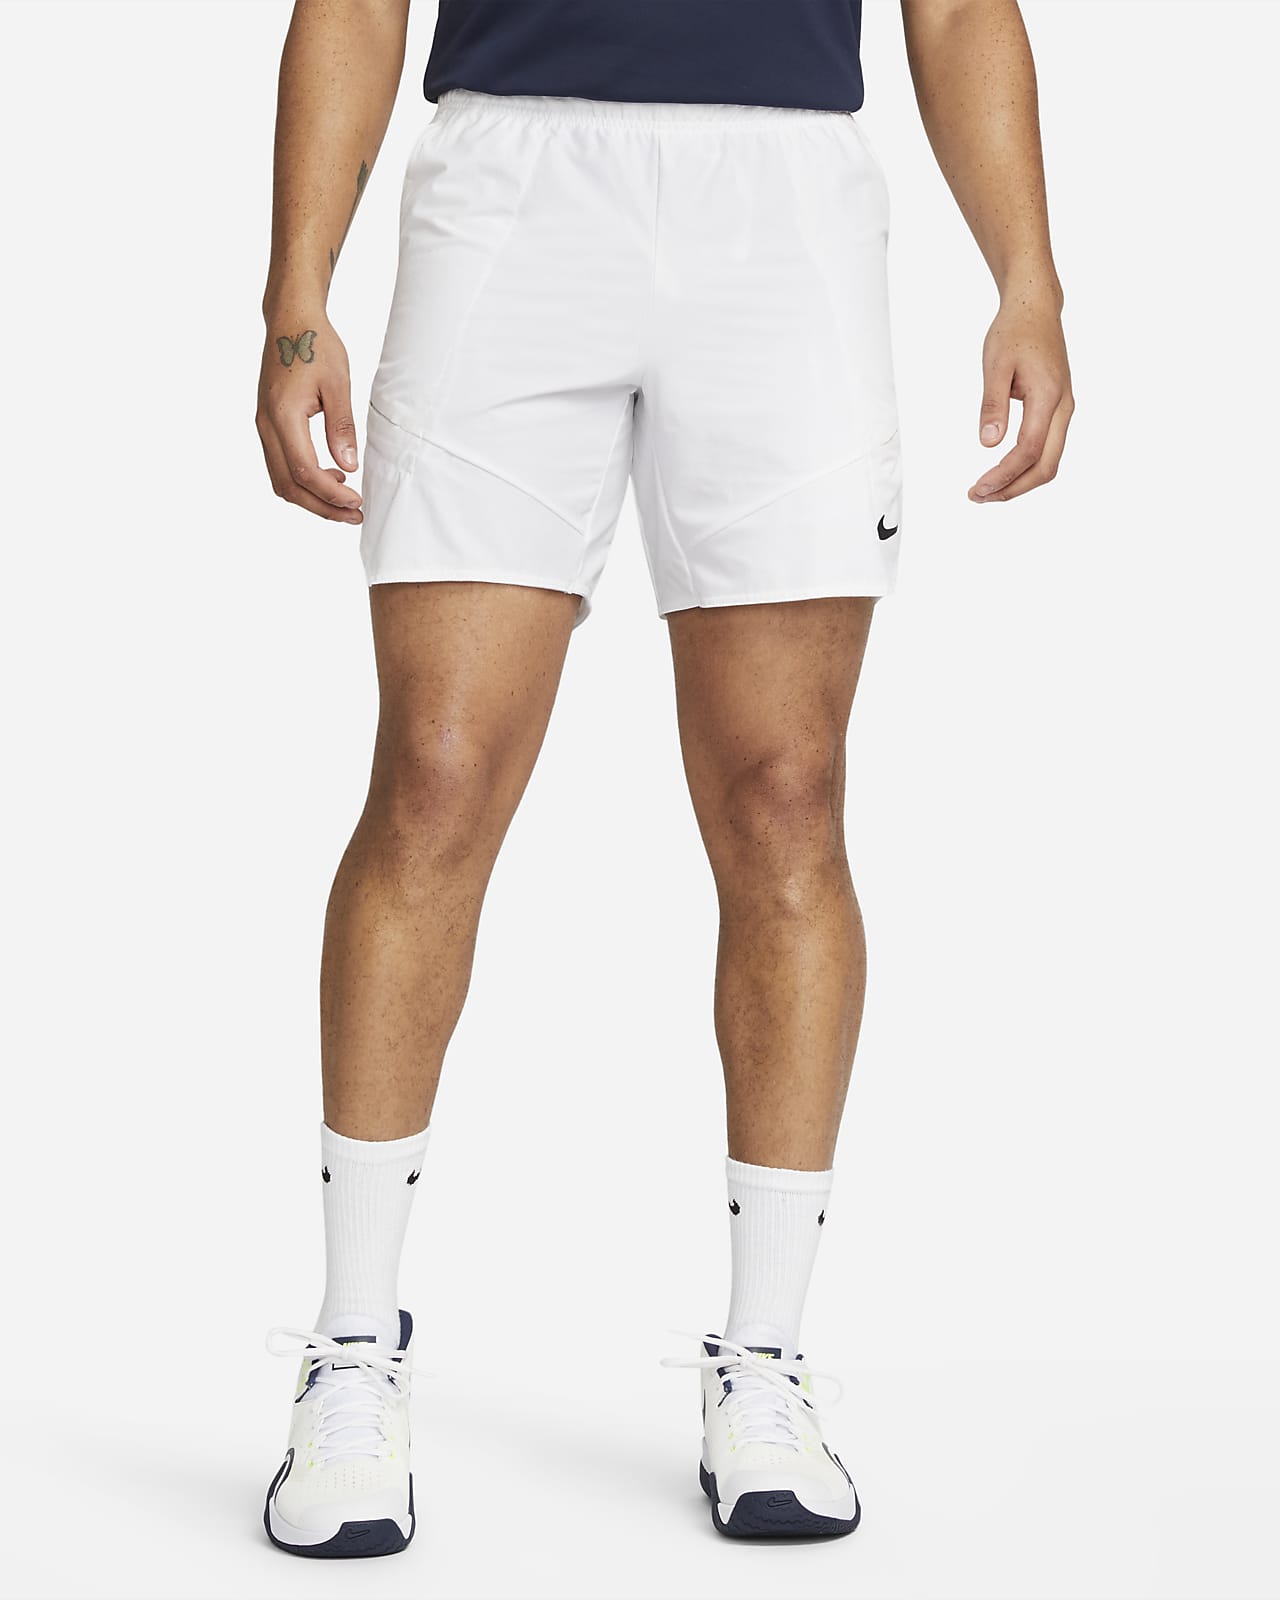 NikeCourt Dri-FIT Advantage 18 cm-es férfi teniszrövidnadrág